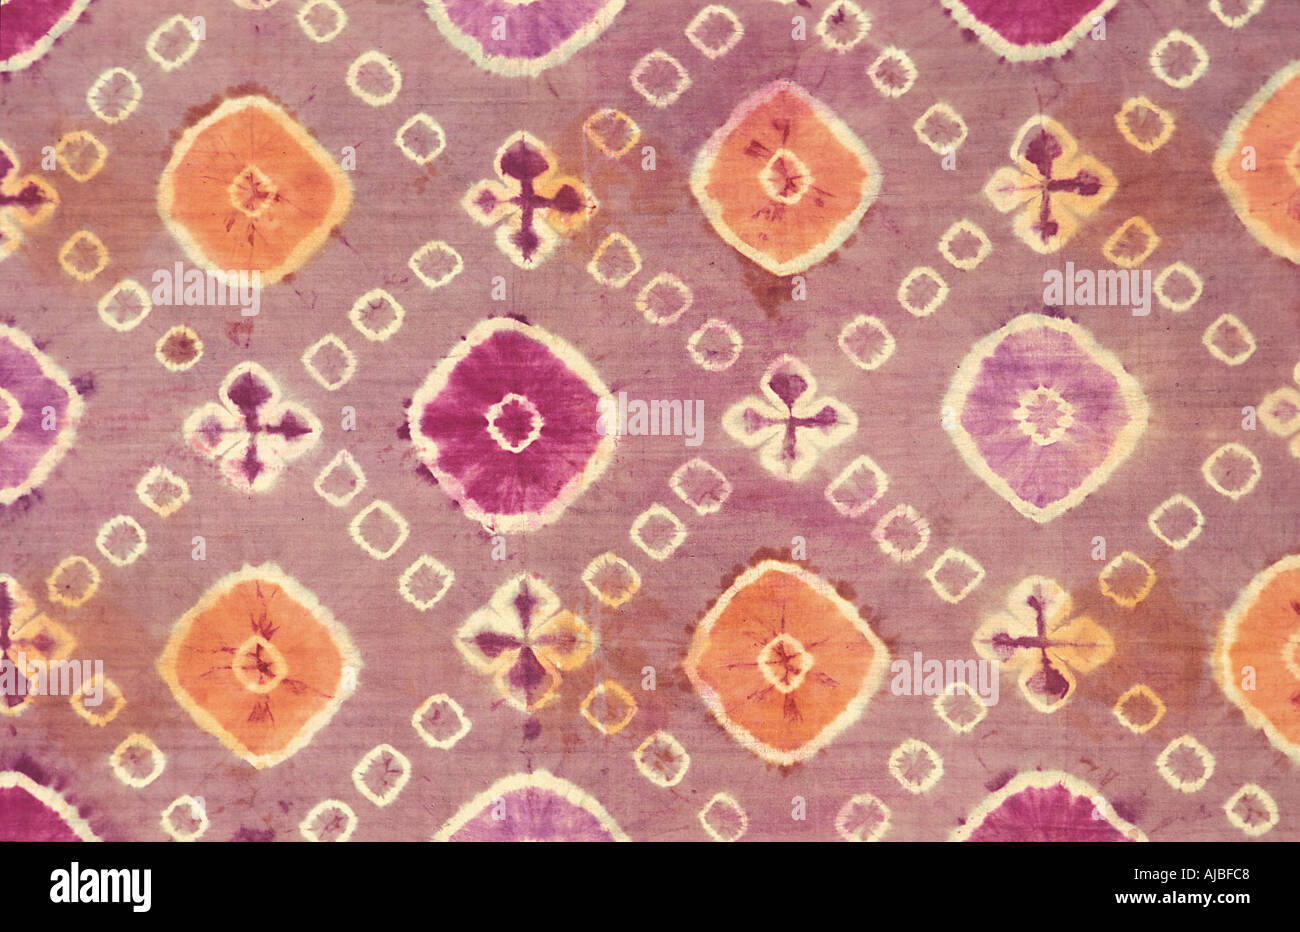 Le Plangi tie dye un tissu de soie décoré méthode Bali Indonésie Banque D'Images